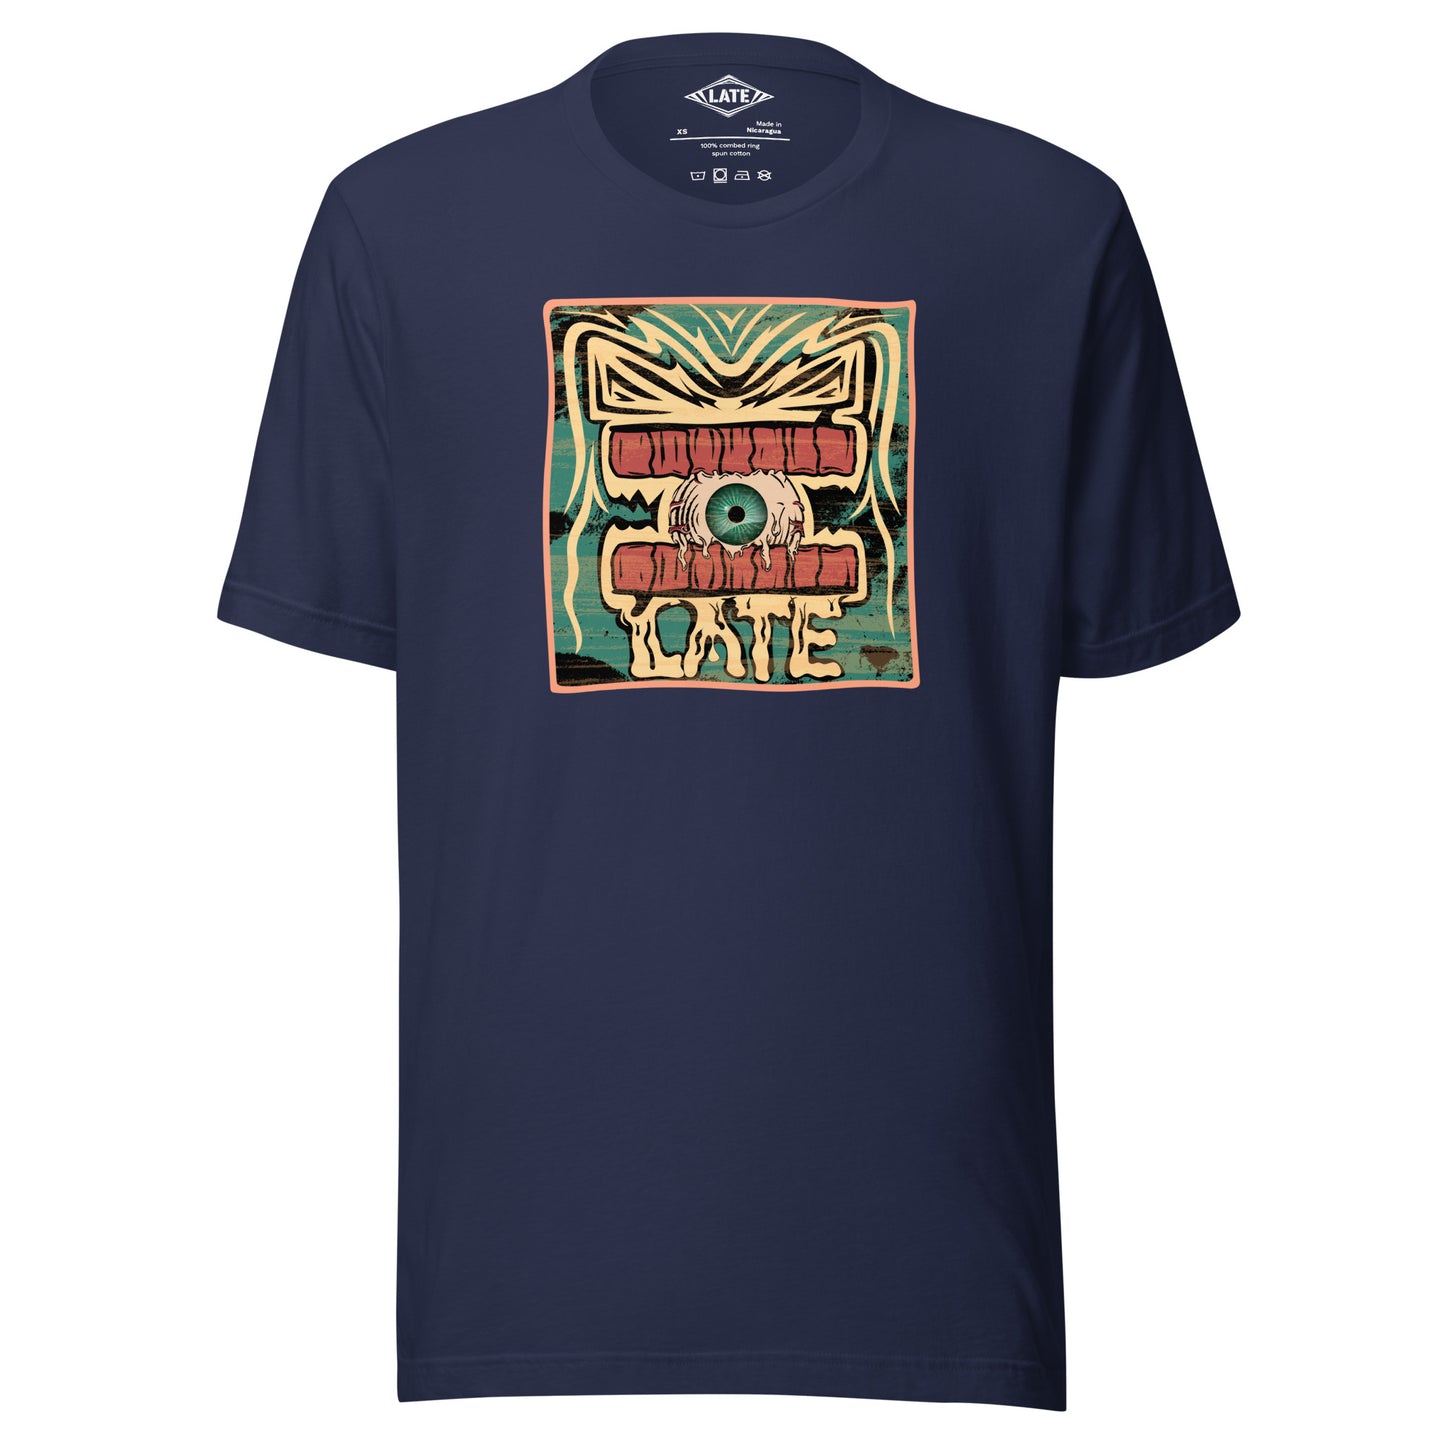 T-shirt rétro skateboarding, design couleur délavée, années 70,80, original dent et oeil skate, tee-shirt unisexe navy